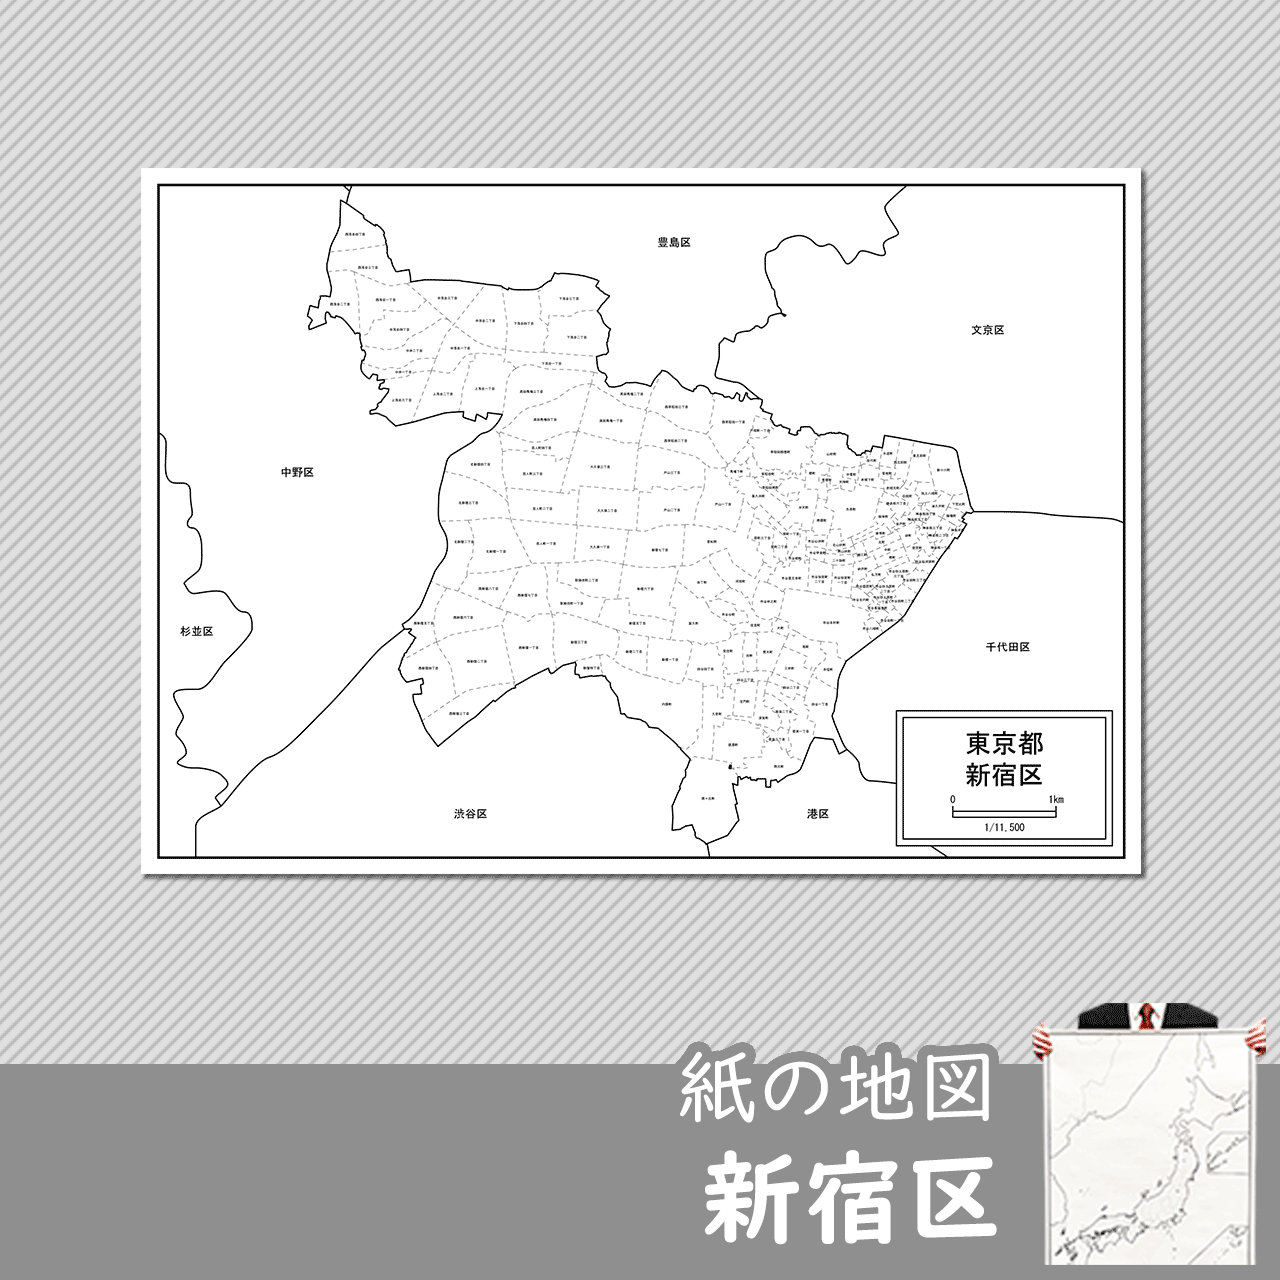 東京都新宿区の紙の白地図のサムネイル